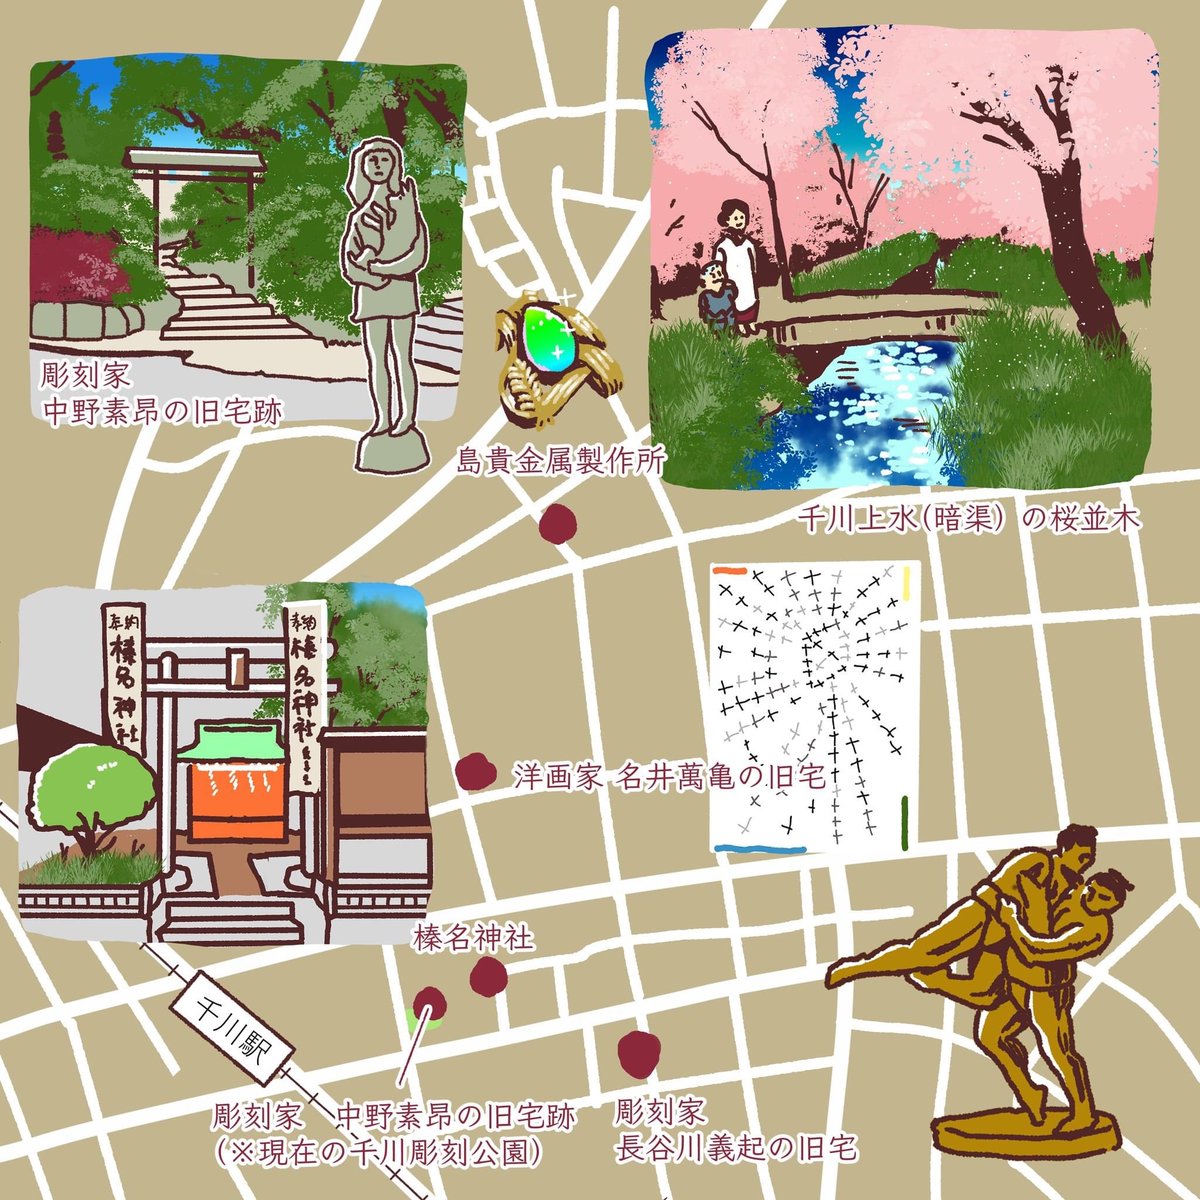 #としまひすとりぃ 地図「豊島区千川」
アーティストが多く住んだ千川地区。文化的な雰囲気が漂います。 